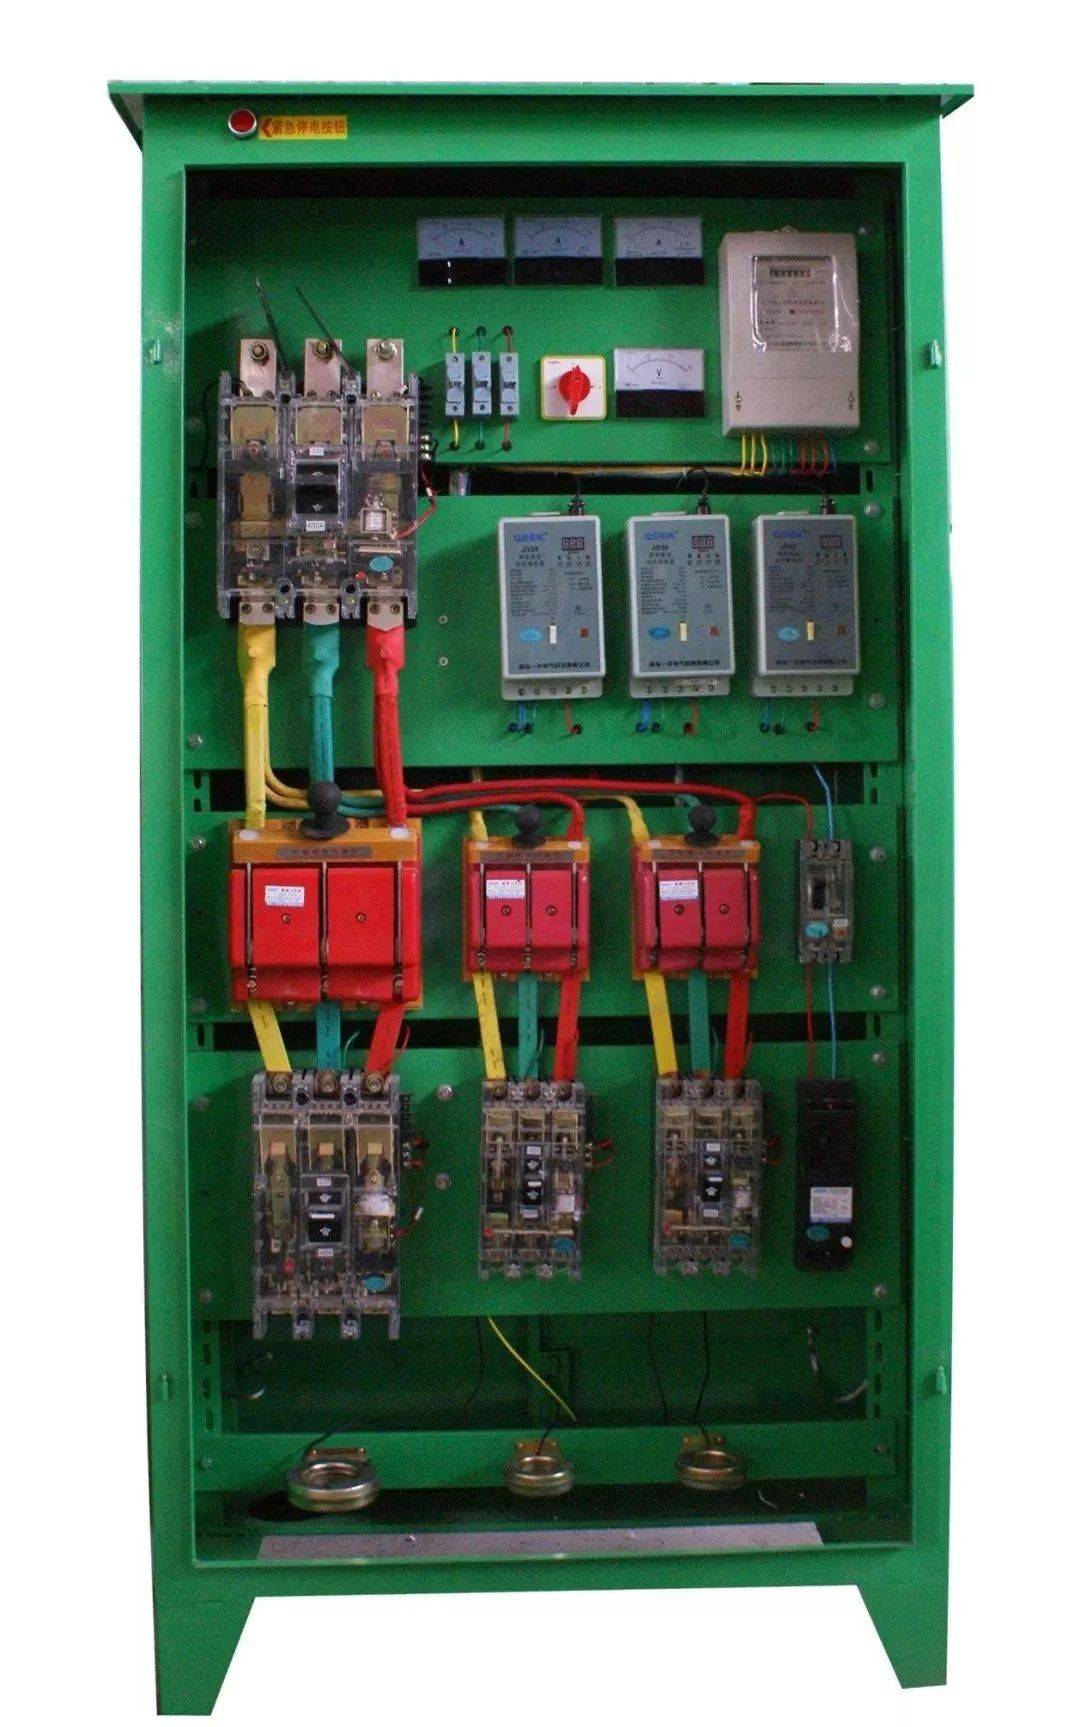 箱:施工用电配电柜作建筑工地施工用电用,是专门针对工程施工现场情况